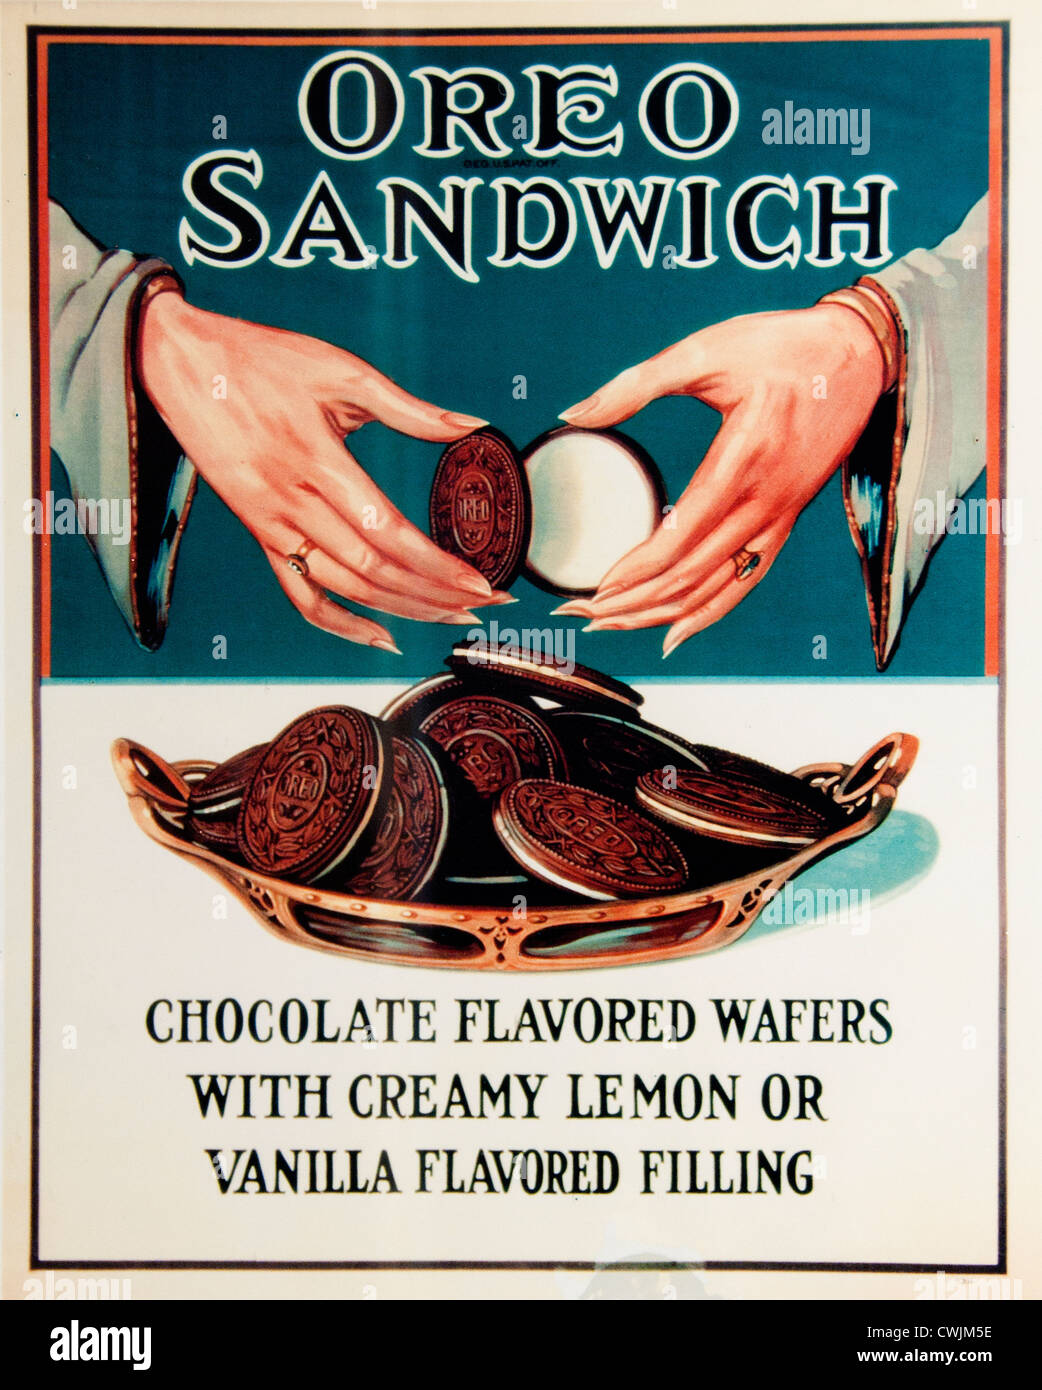 Oreo Sandwich Schokoladen-Waffeln mit cremiger Zitronen- oder Vanillefüllung Manhattan, New York City , American, Vereinigte Staaten von Amerika, Stockfoto